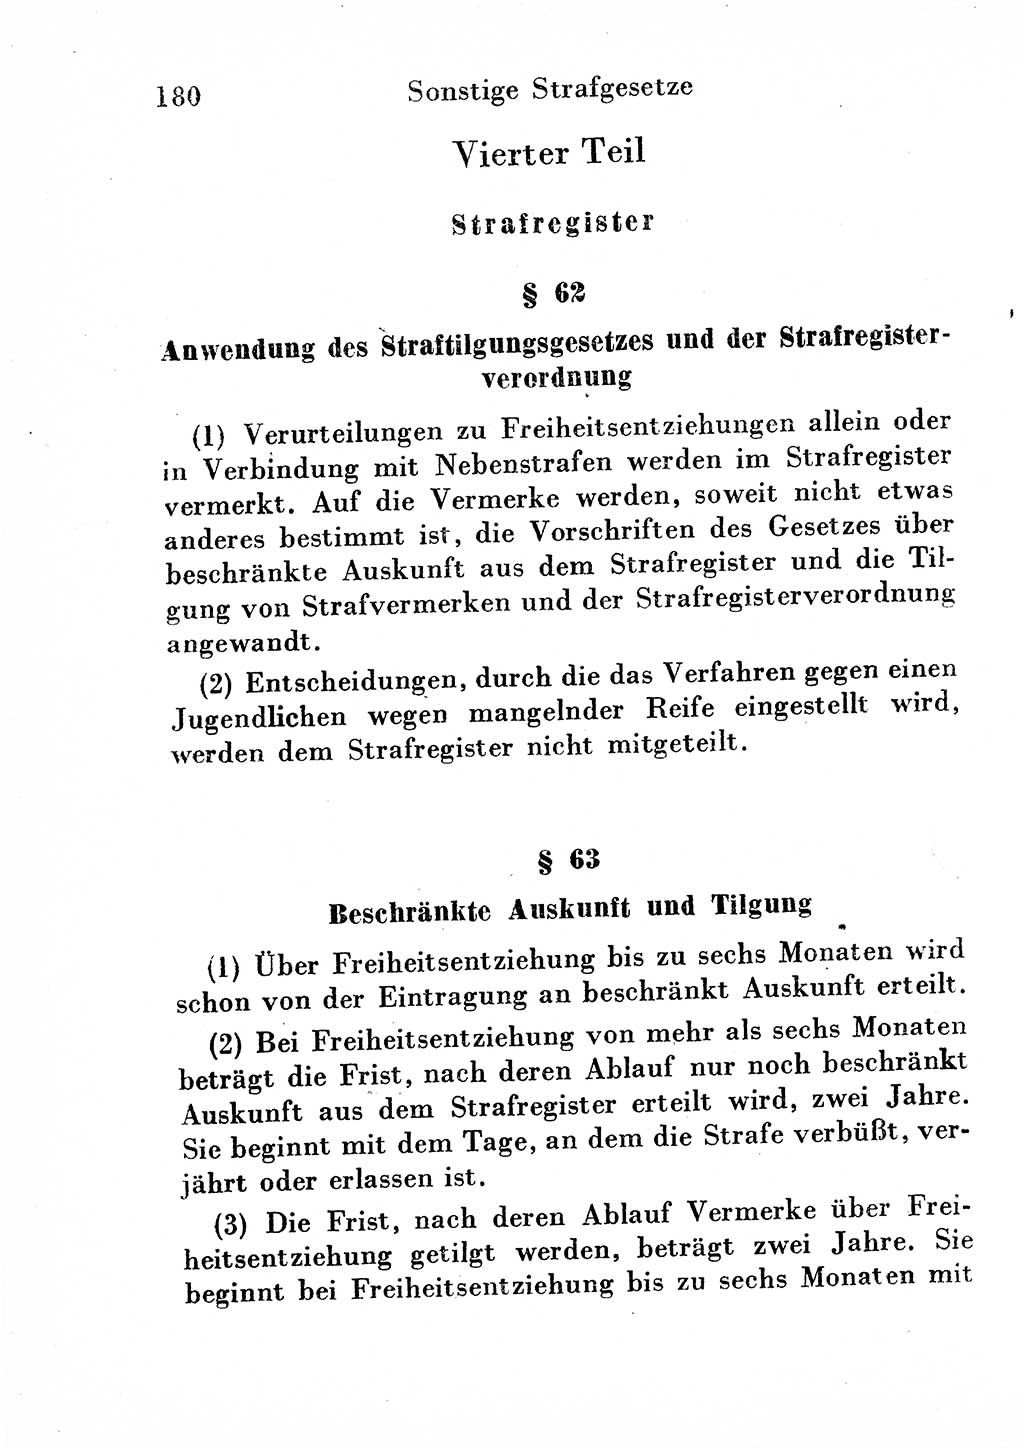 Strafgesetzbuch (StGB) und andere Strafgesetze [Deutsche Demokratische Republik (DDR)] 1954, Seite 180 (StGB Strafges. DDR 1954, S. 180)